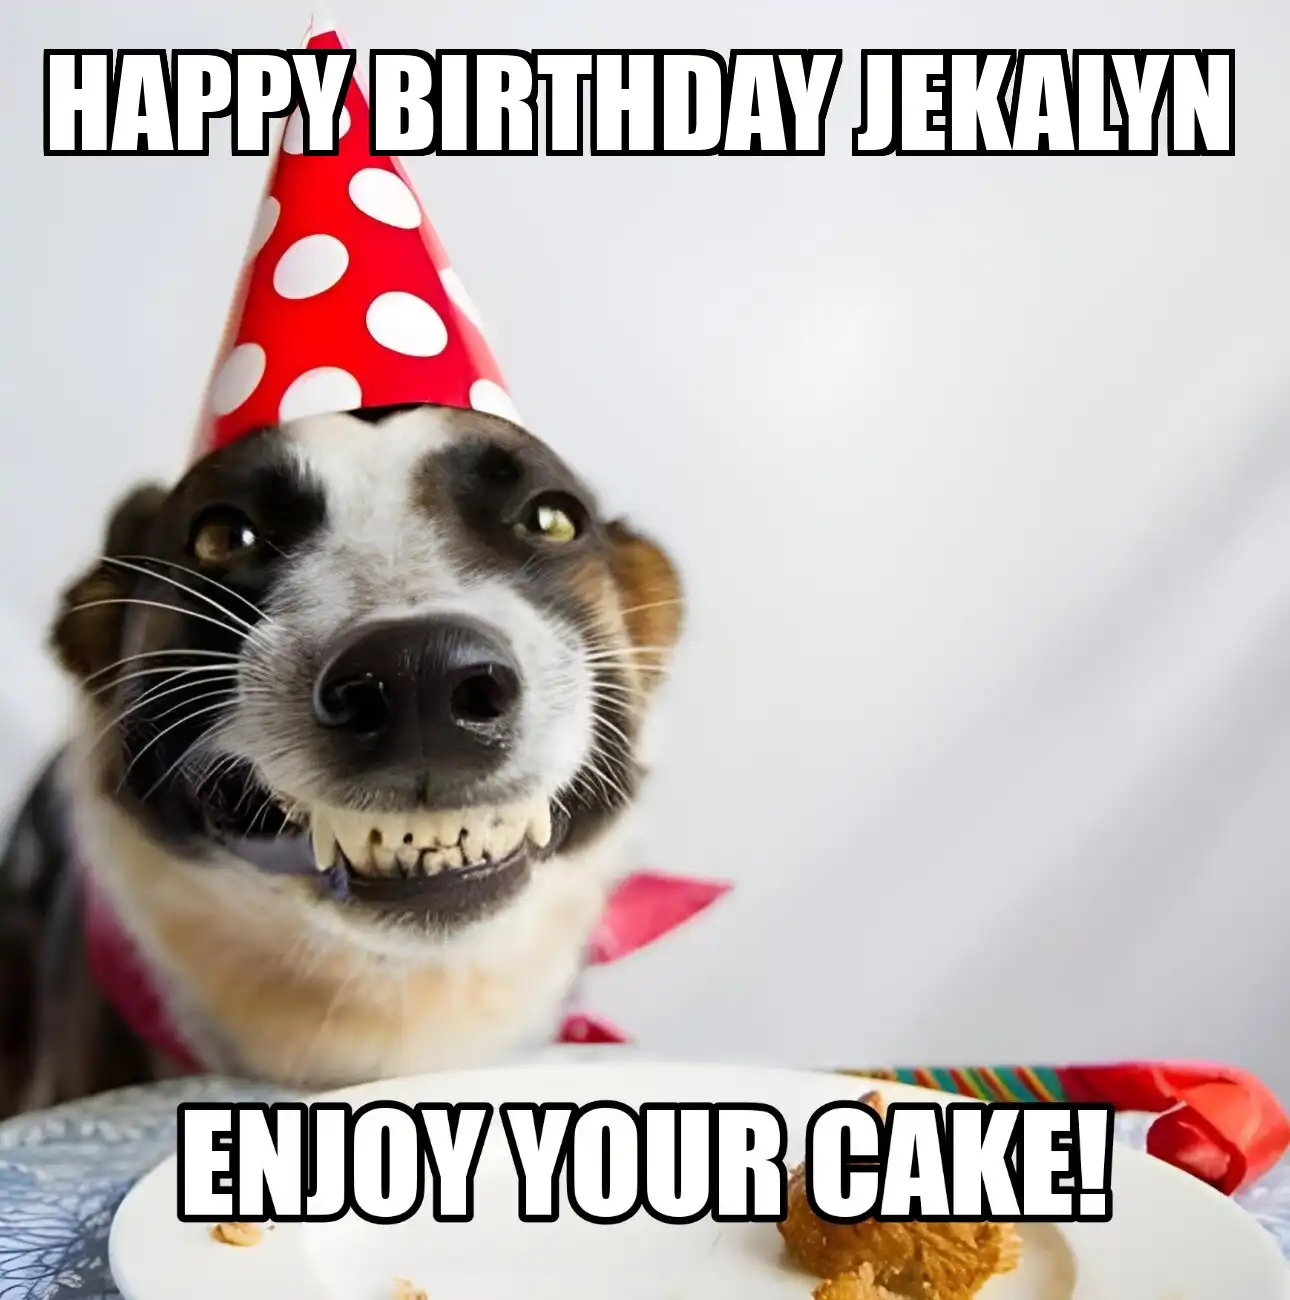 Happy Birthday Jekalyn Enjoy Your Cake Dog Meme